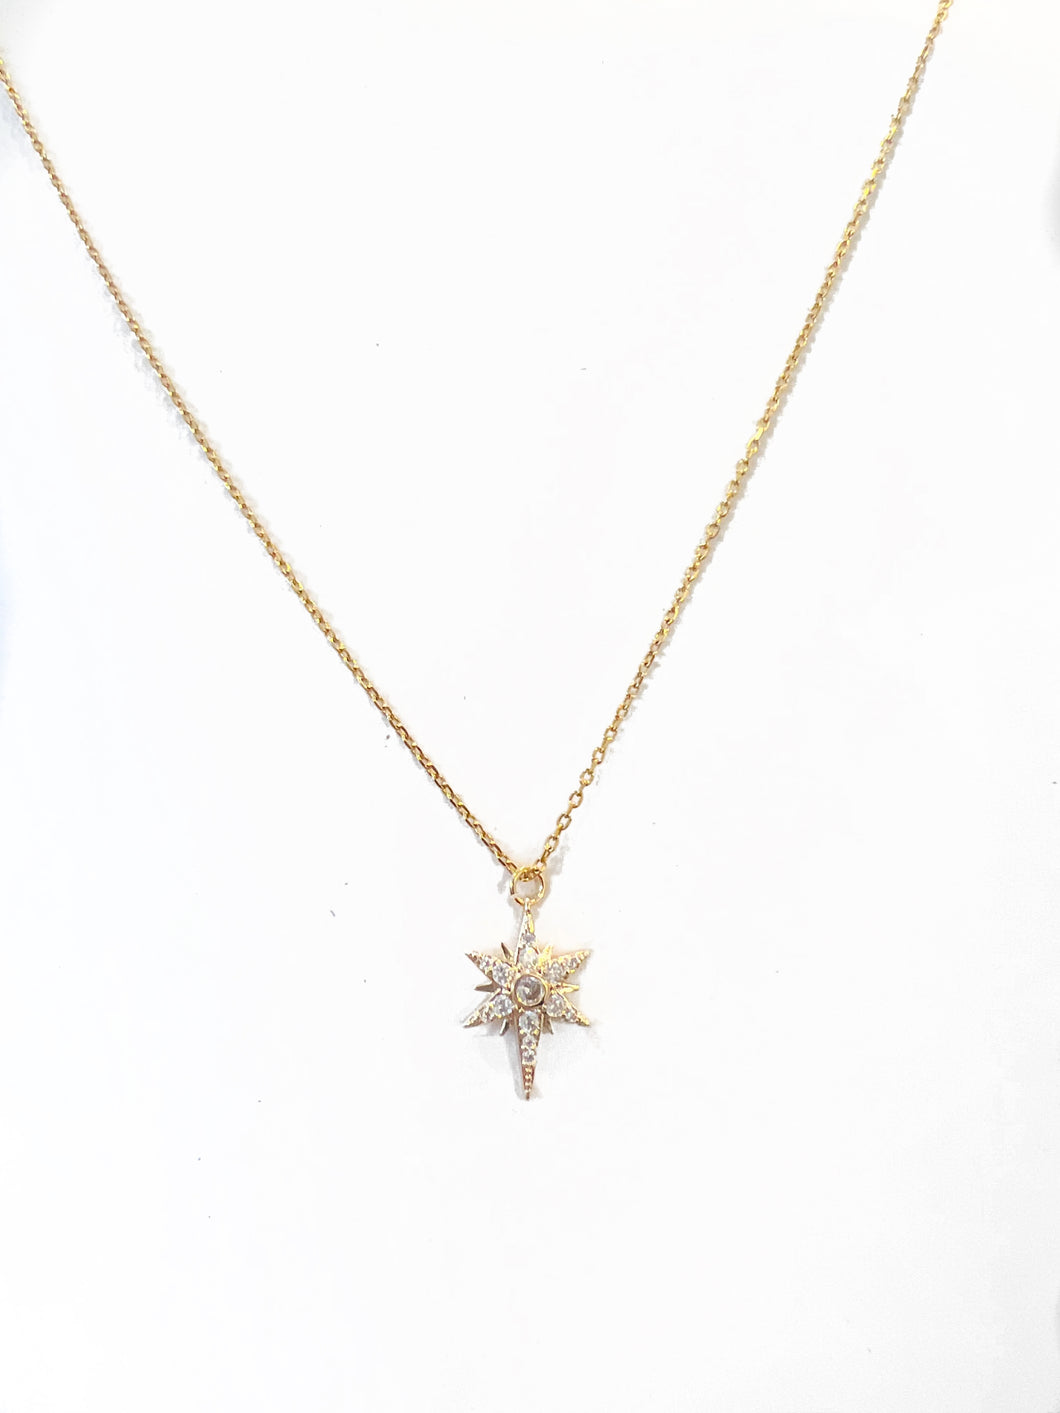 Nikki Smith-Golden Starburst Charm Necklace